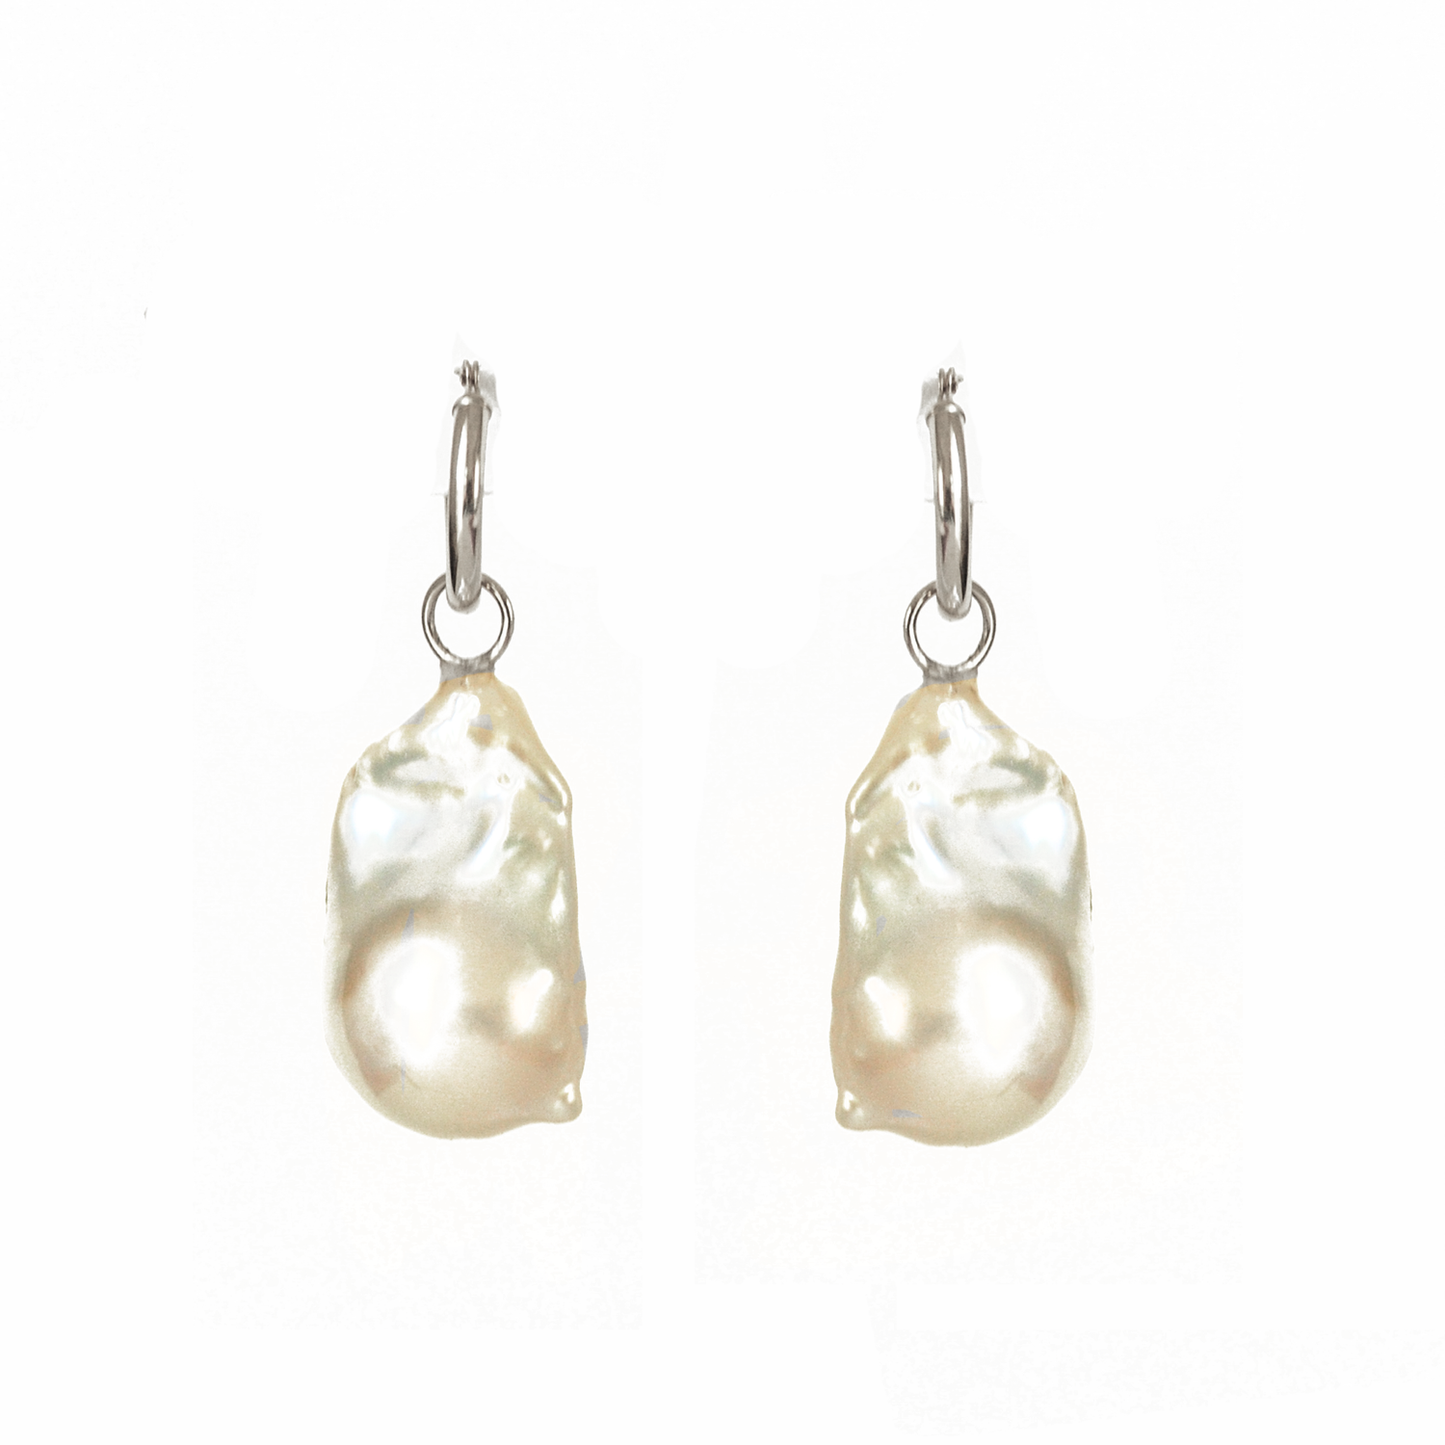 Large Baroque Pearl & Gold Hoop Earrings